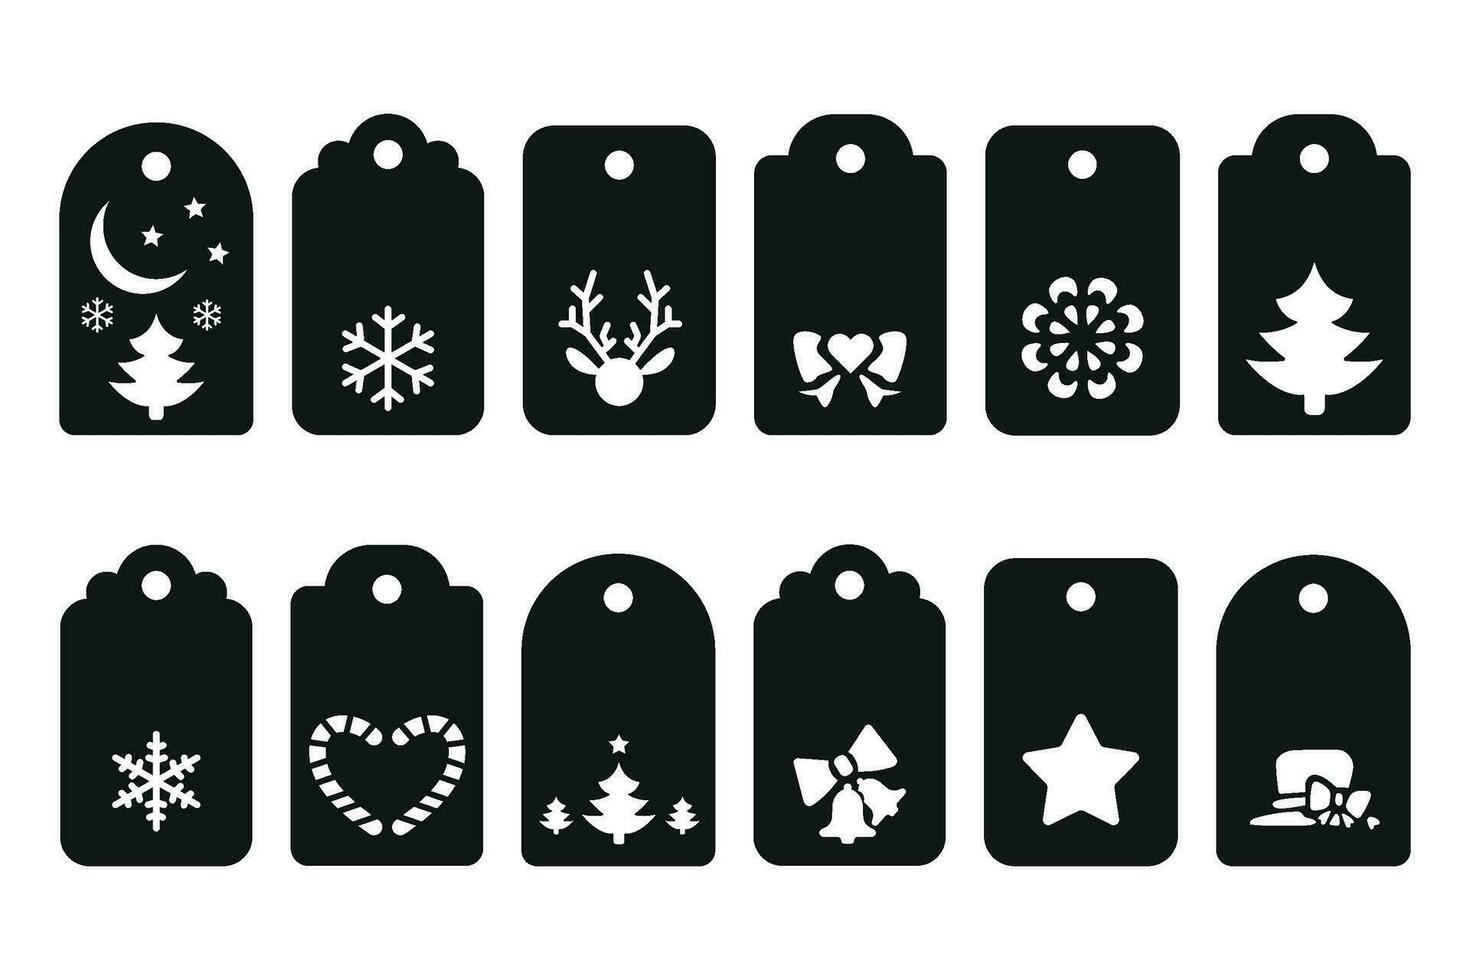 Kerstmis tags set, papier besnoeiing sjabloon bestanden, etiketten verzameling vector illustratie